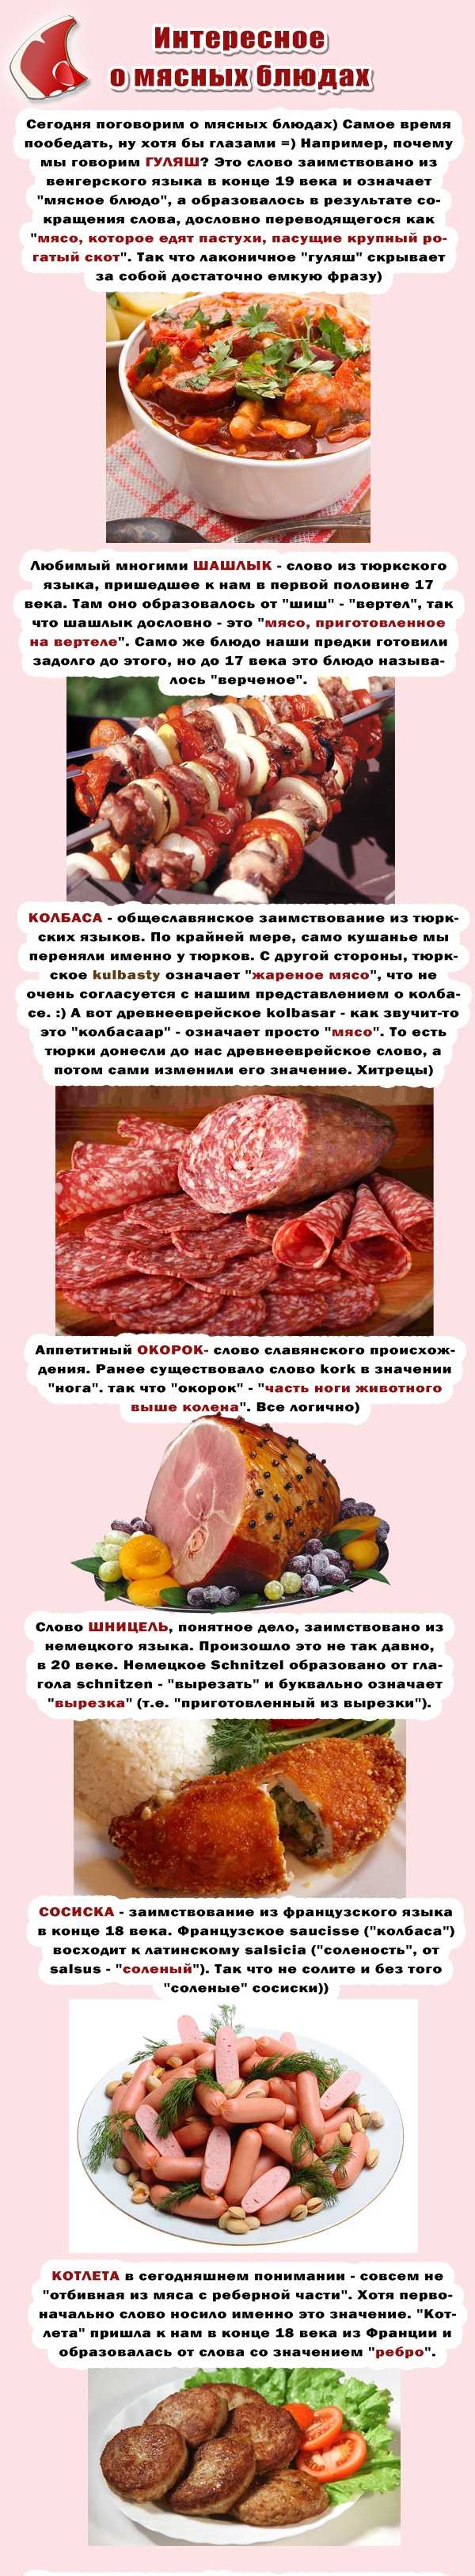 Мясо и язык блюда, интересное, мясо, русский язык, слова